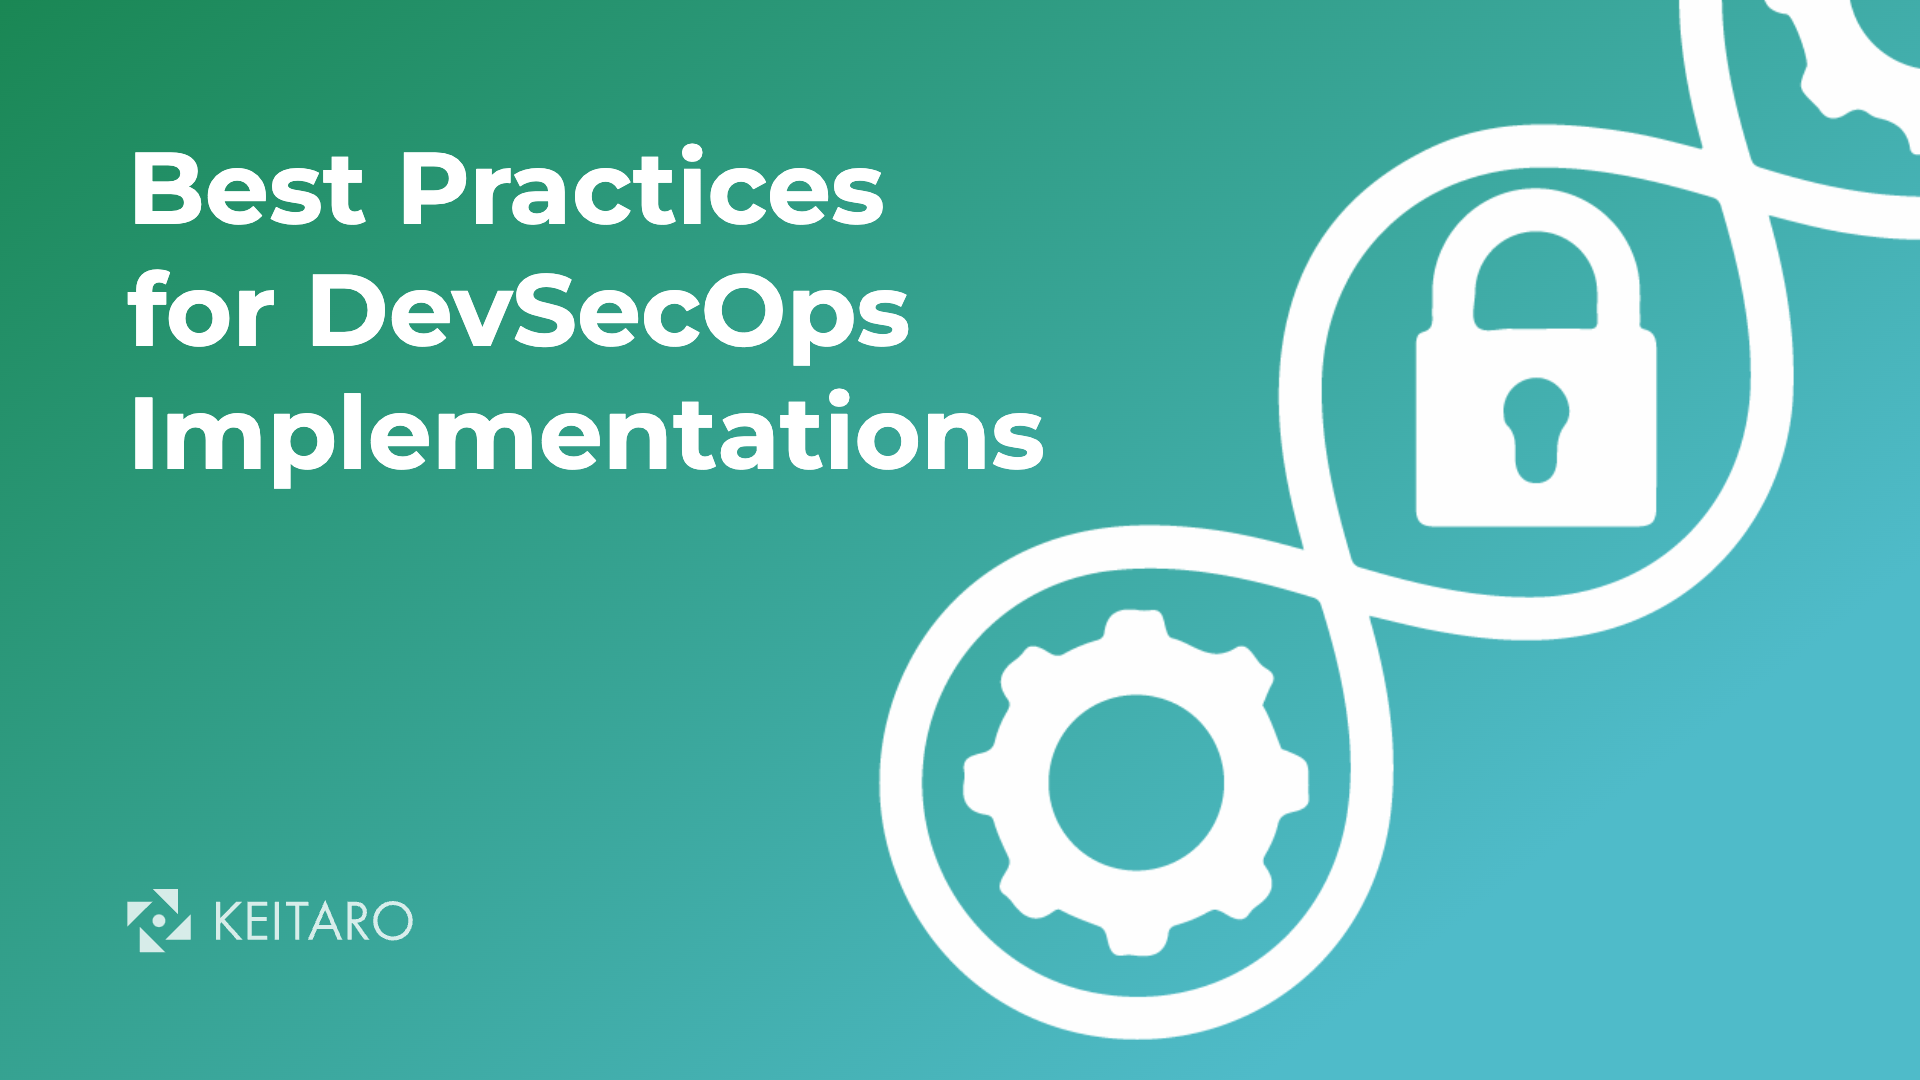 keitaro-best-practices-for-devsecops-implementations